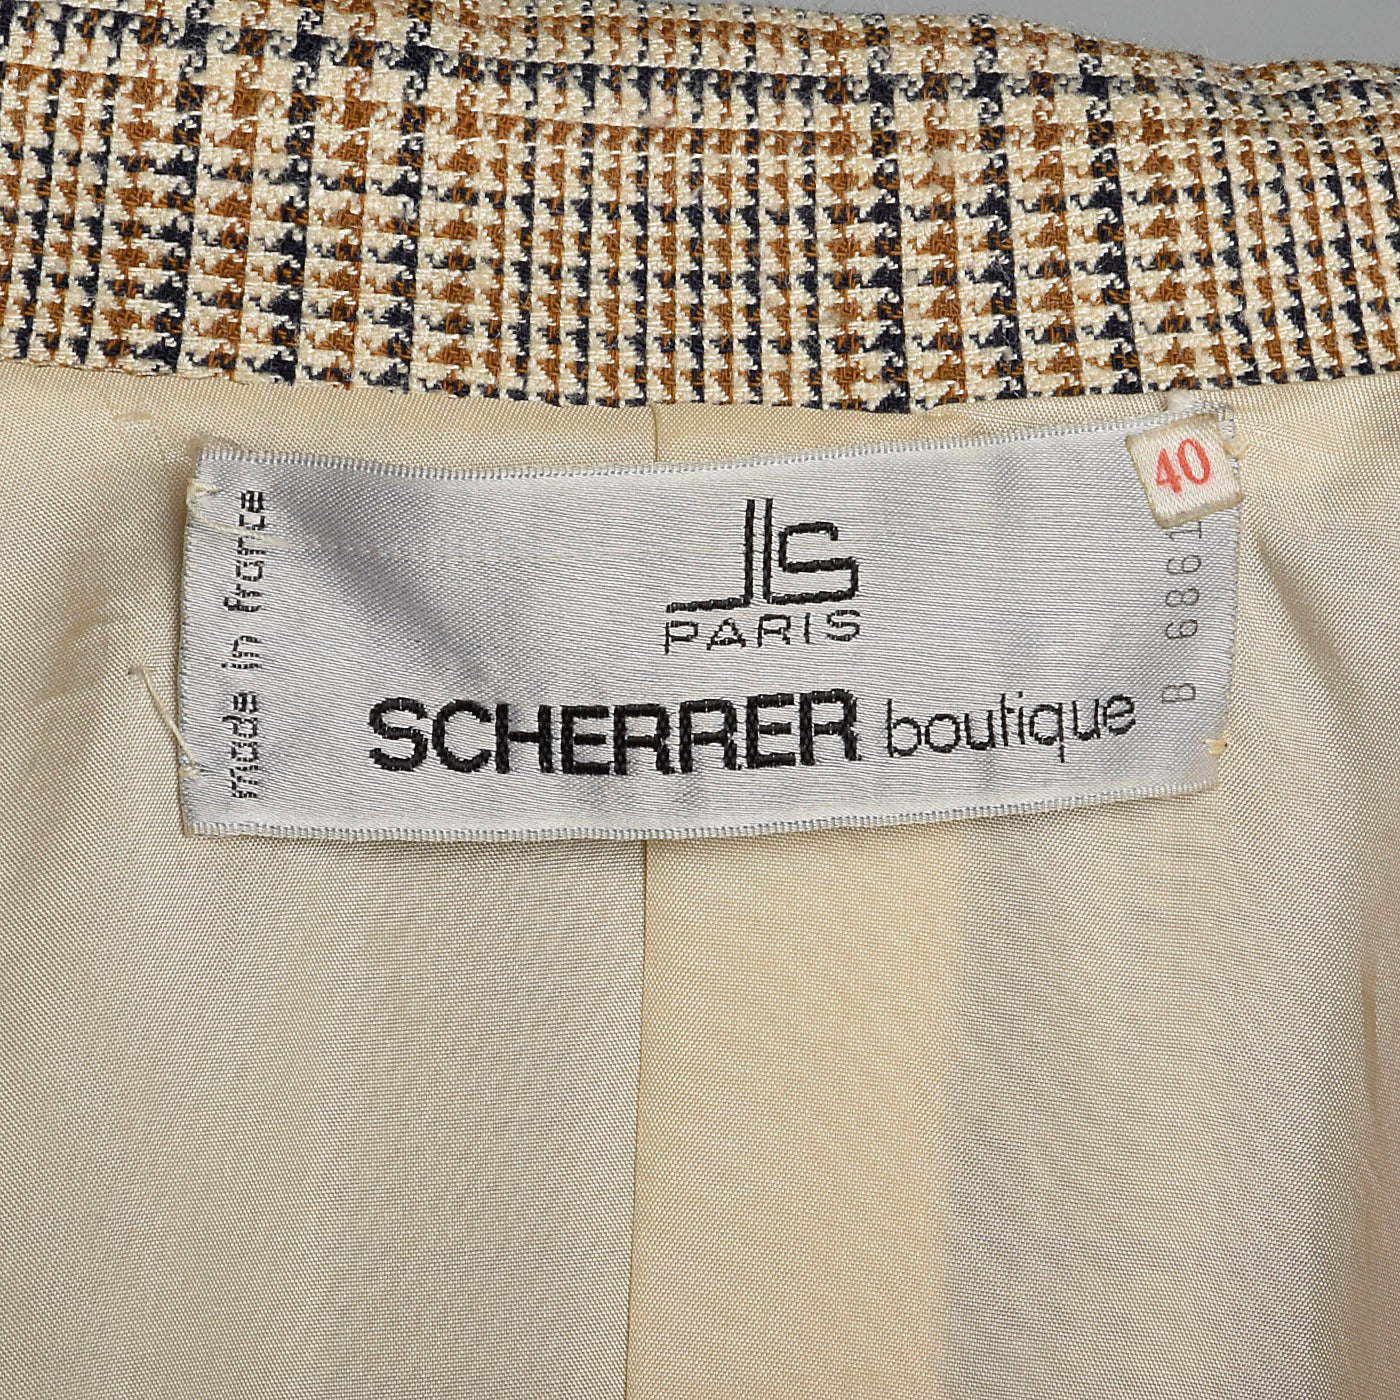 1990s Jean Louis Scherrer Trench Coat and Pants Set